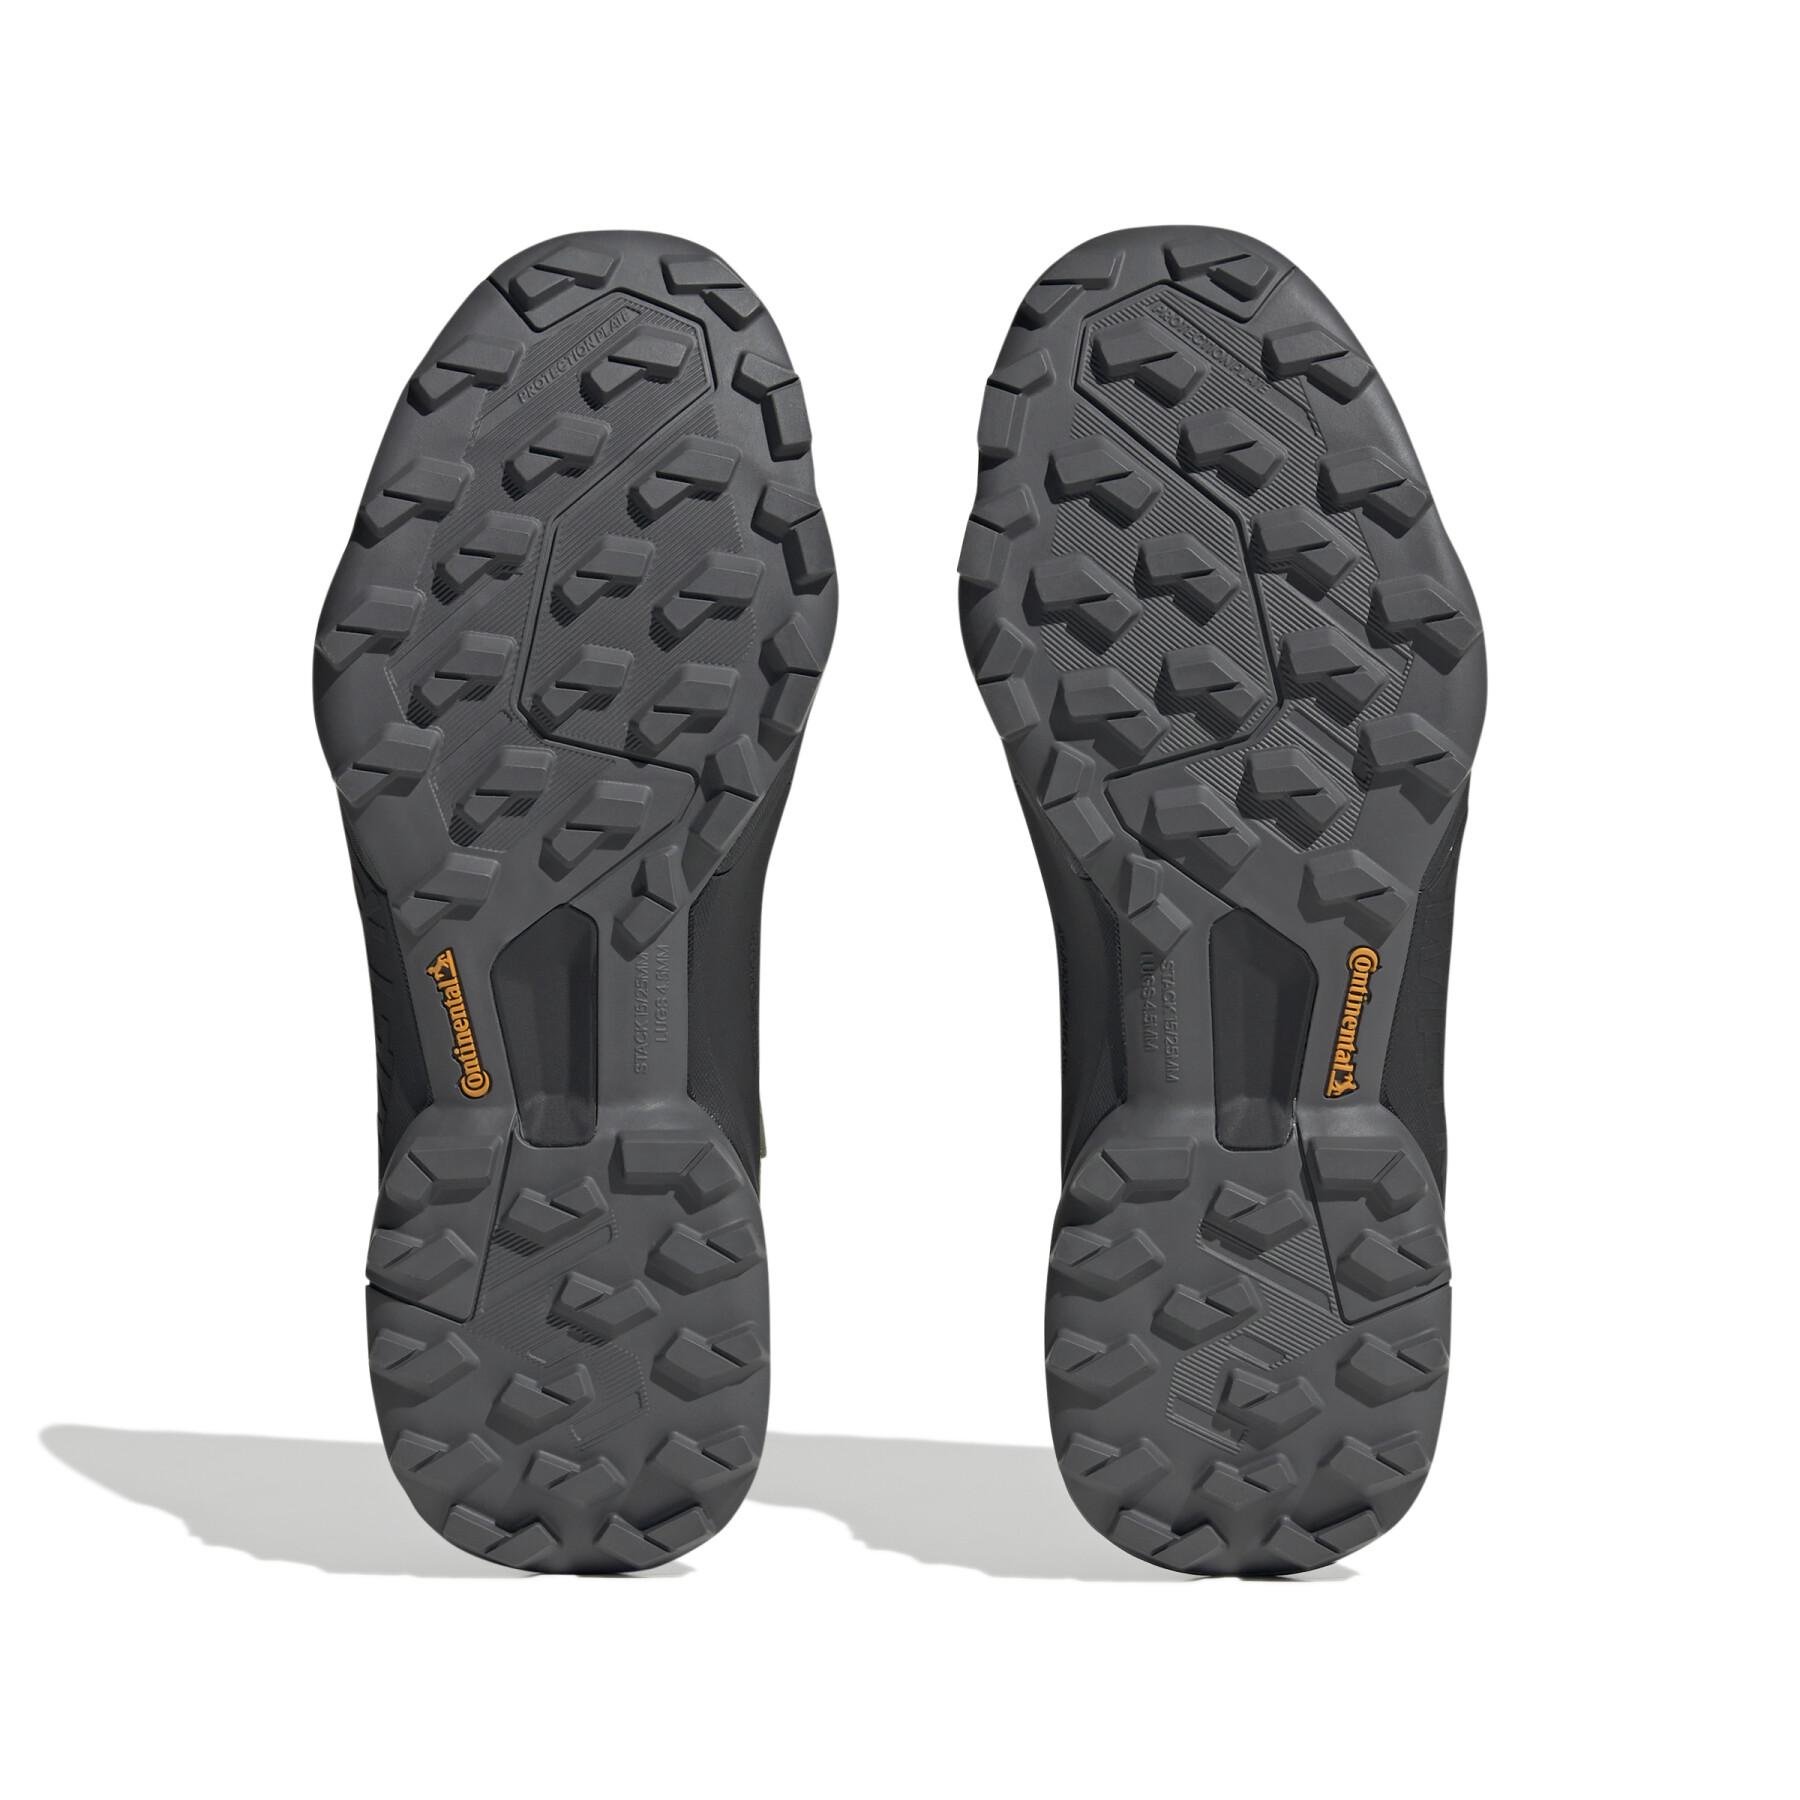 Chaussures de randonnée adidas Terrex Swift R3